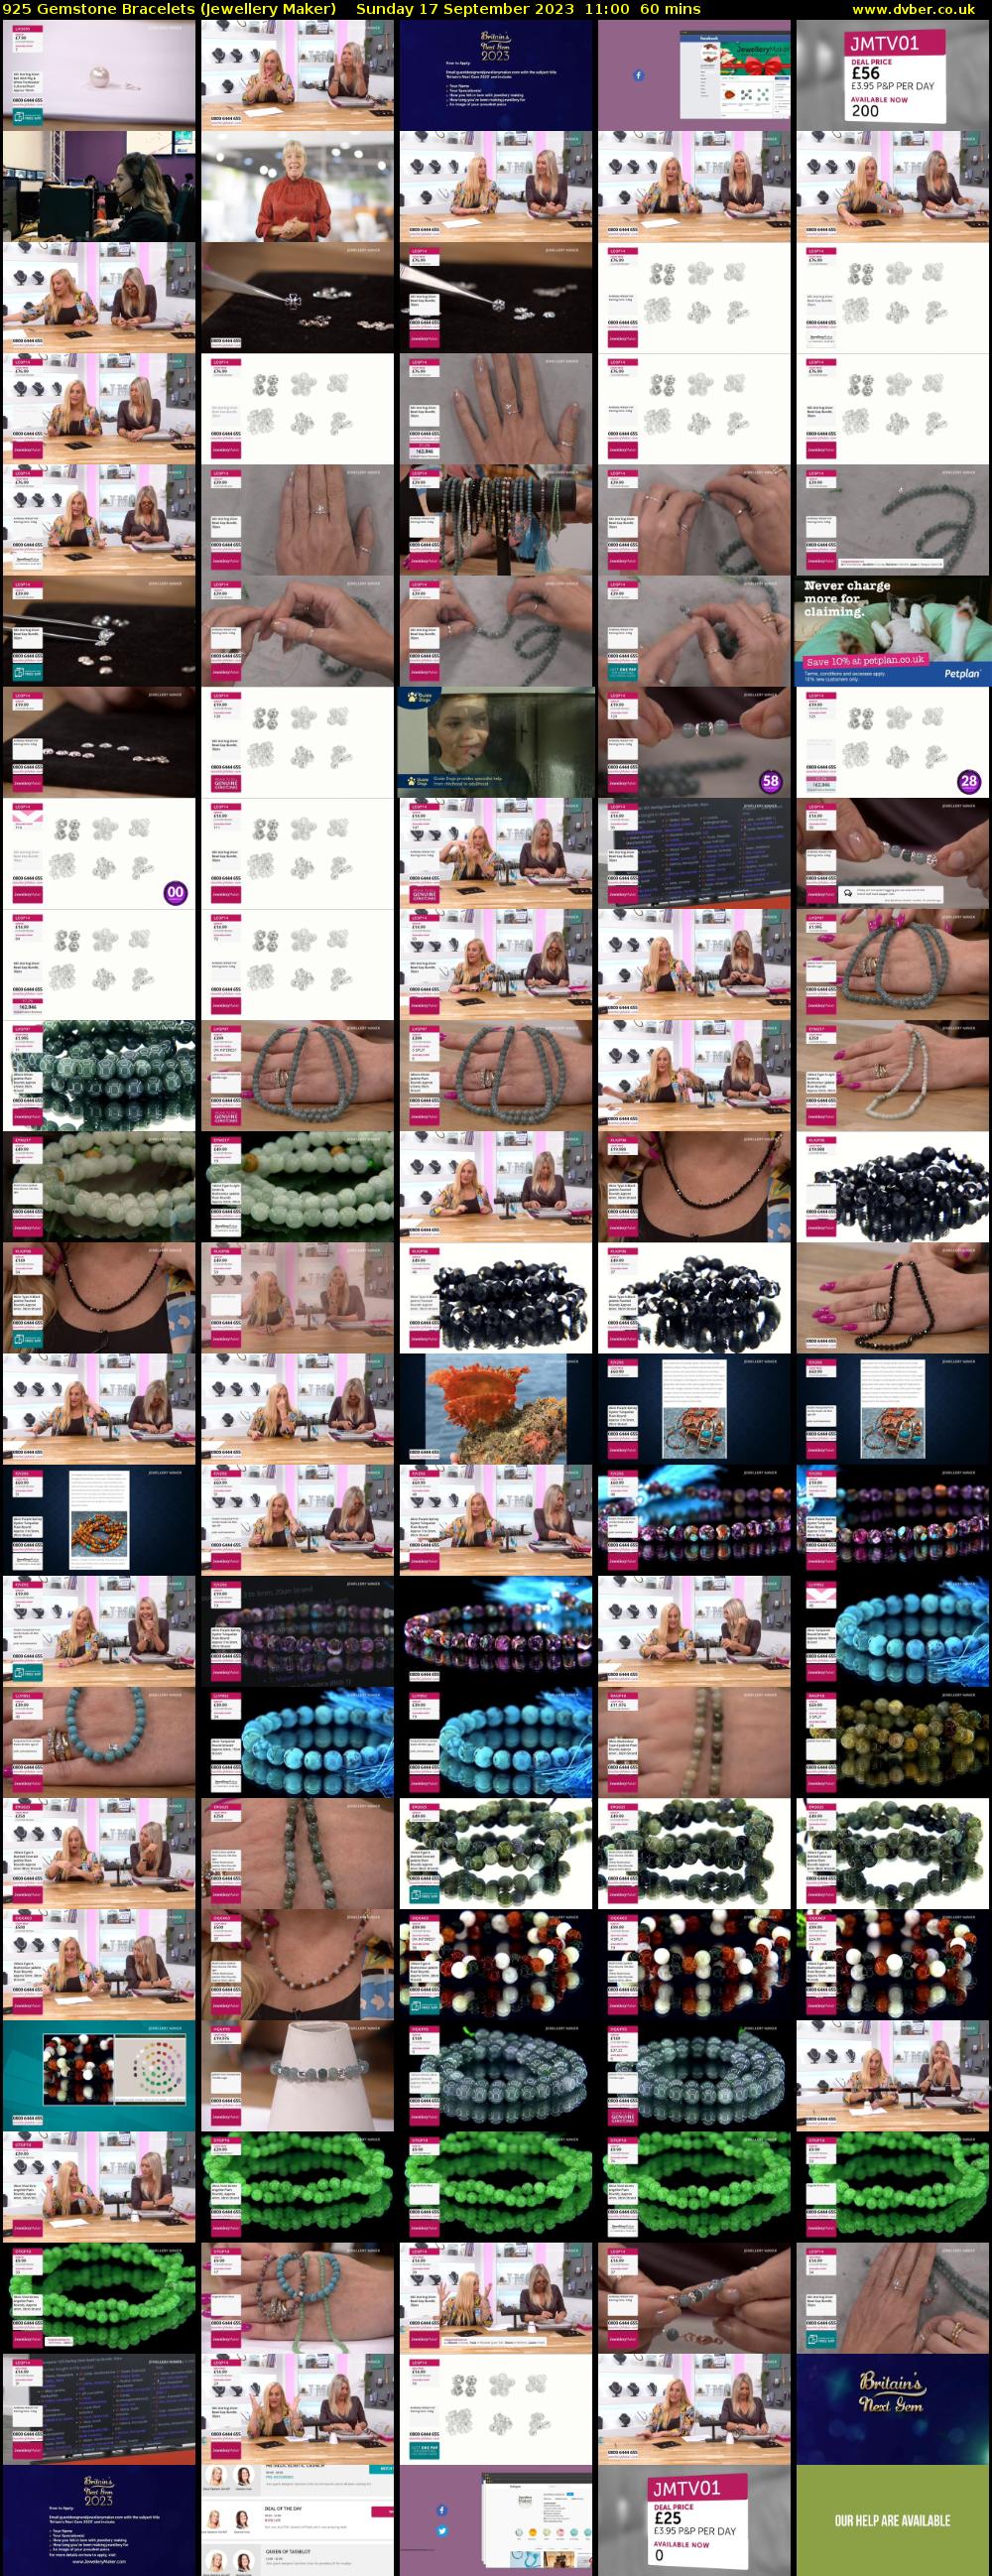 925 Gemstone Bracelets (Jewellery Maker) Sunday 17 September 2023 11:00 - 12:00